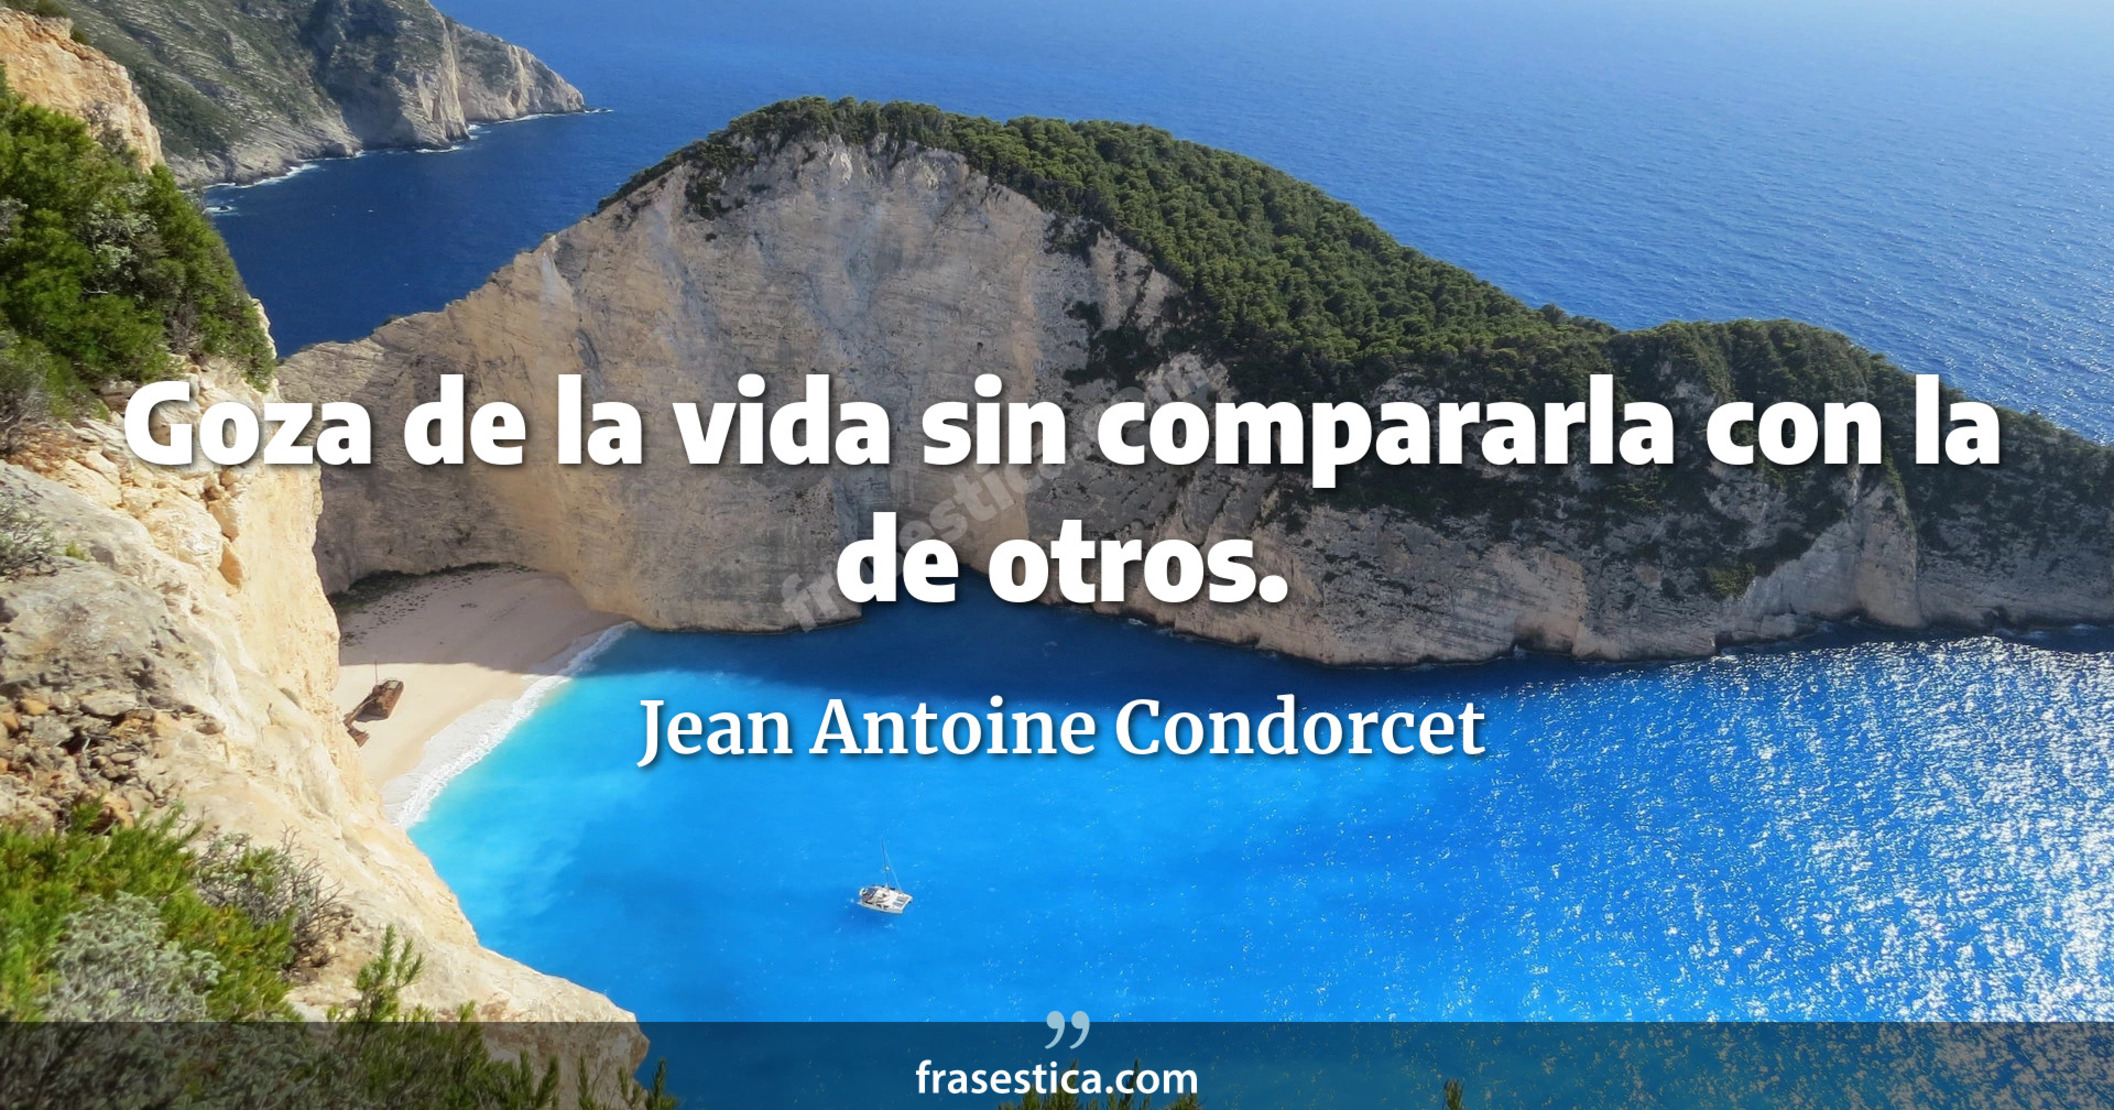 Goza de la vida sin compararla con la de otros. - Jean Antoine Condorcet